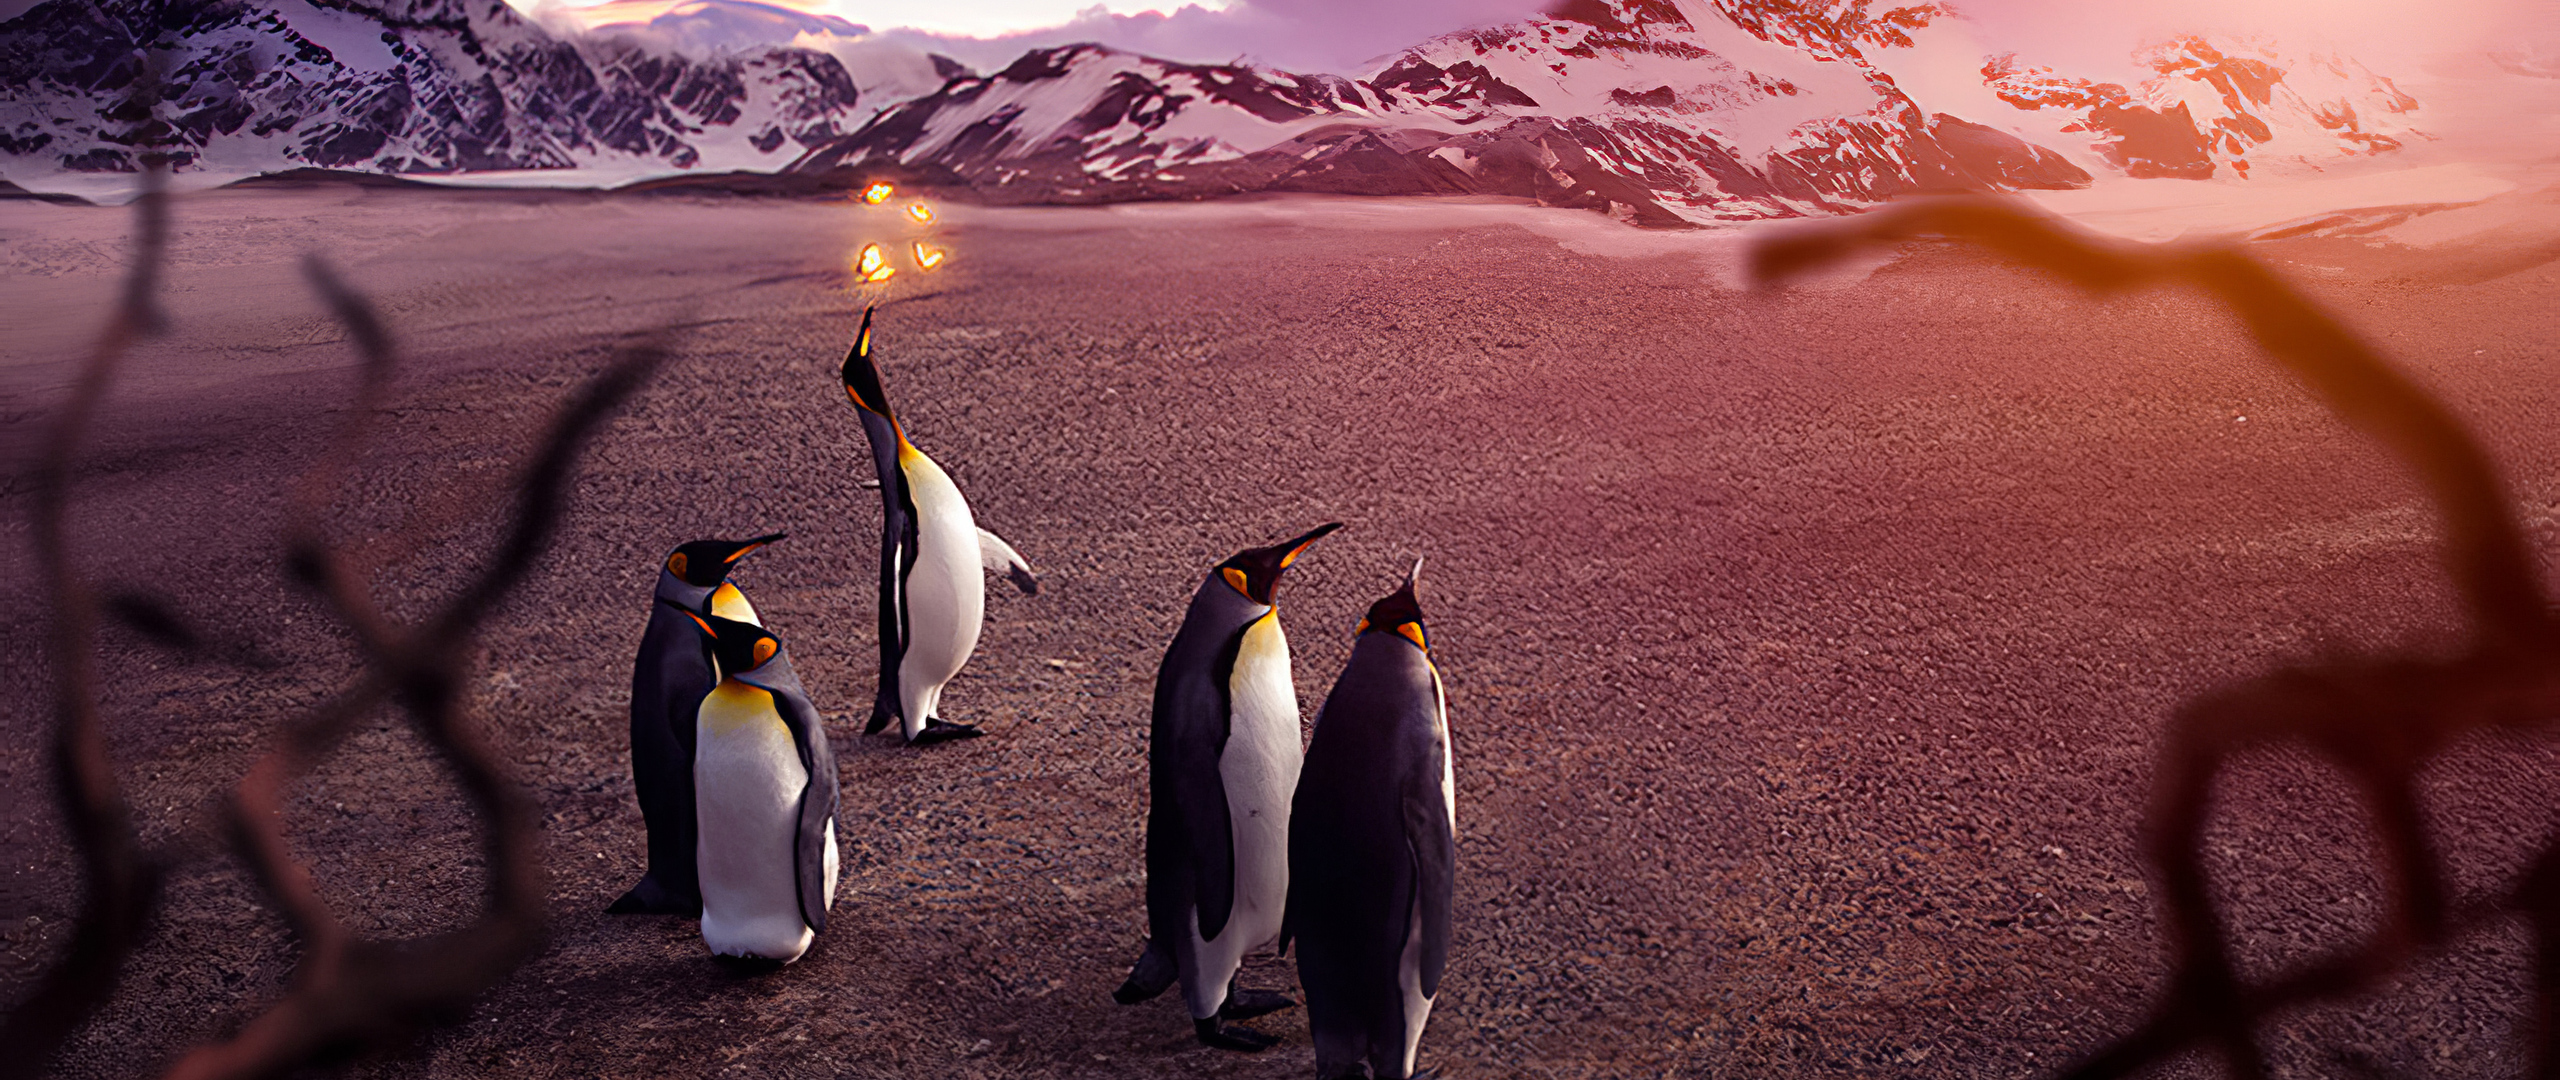 penguins-butterfly-4k-lo-2560x1080.jpg